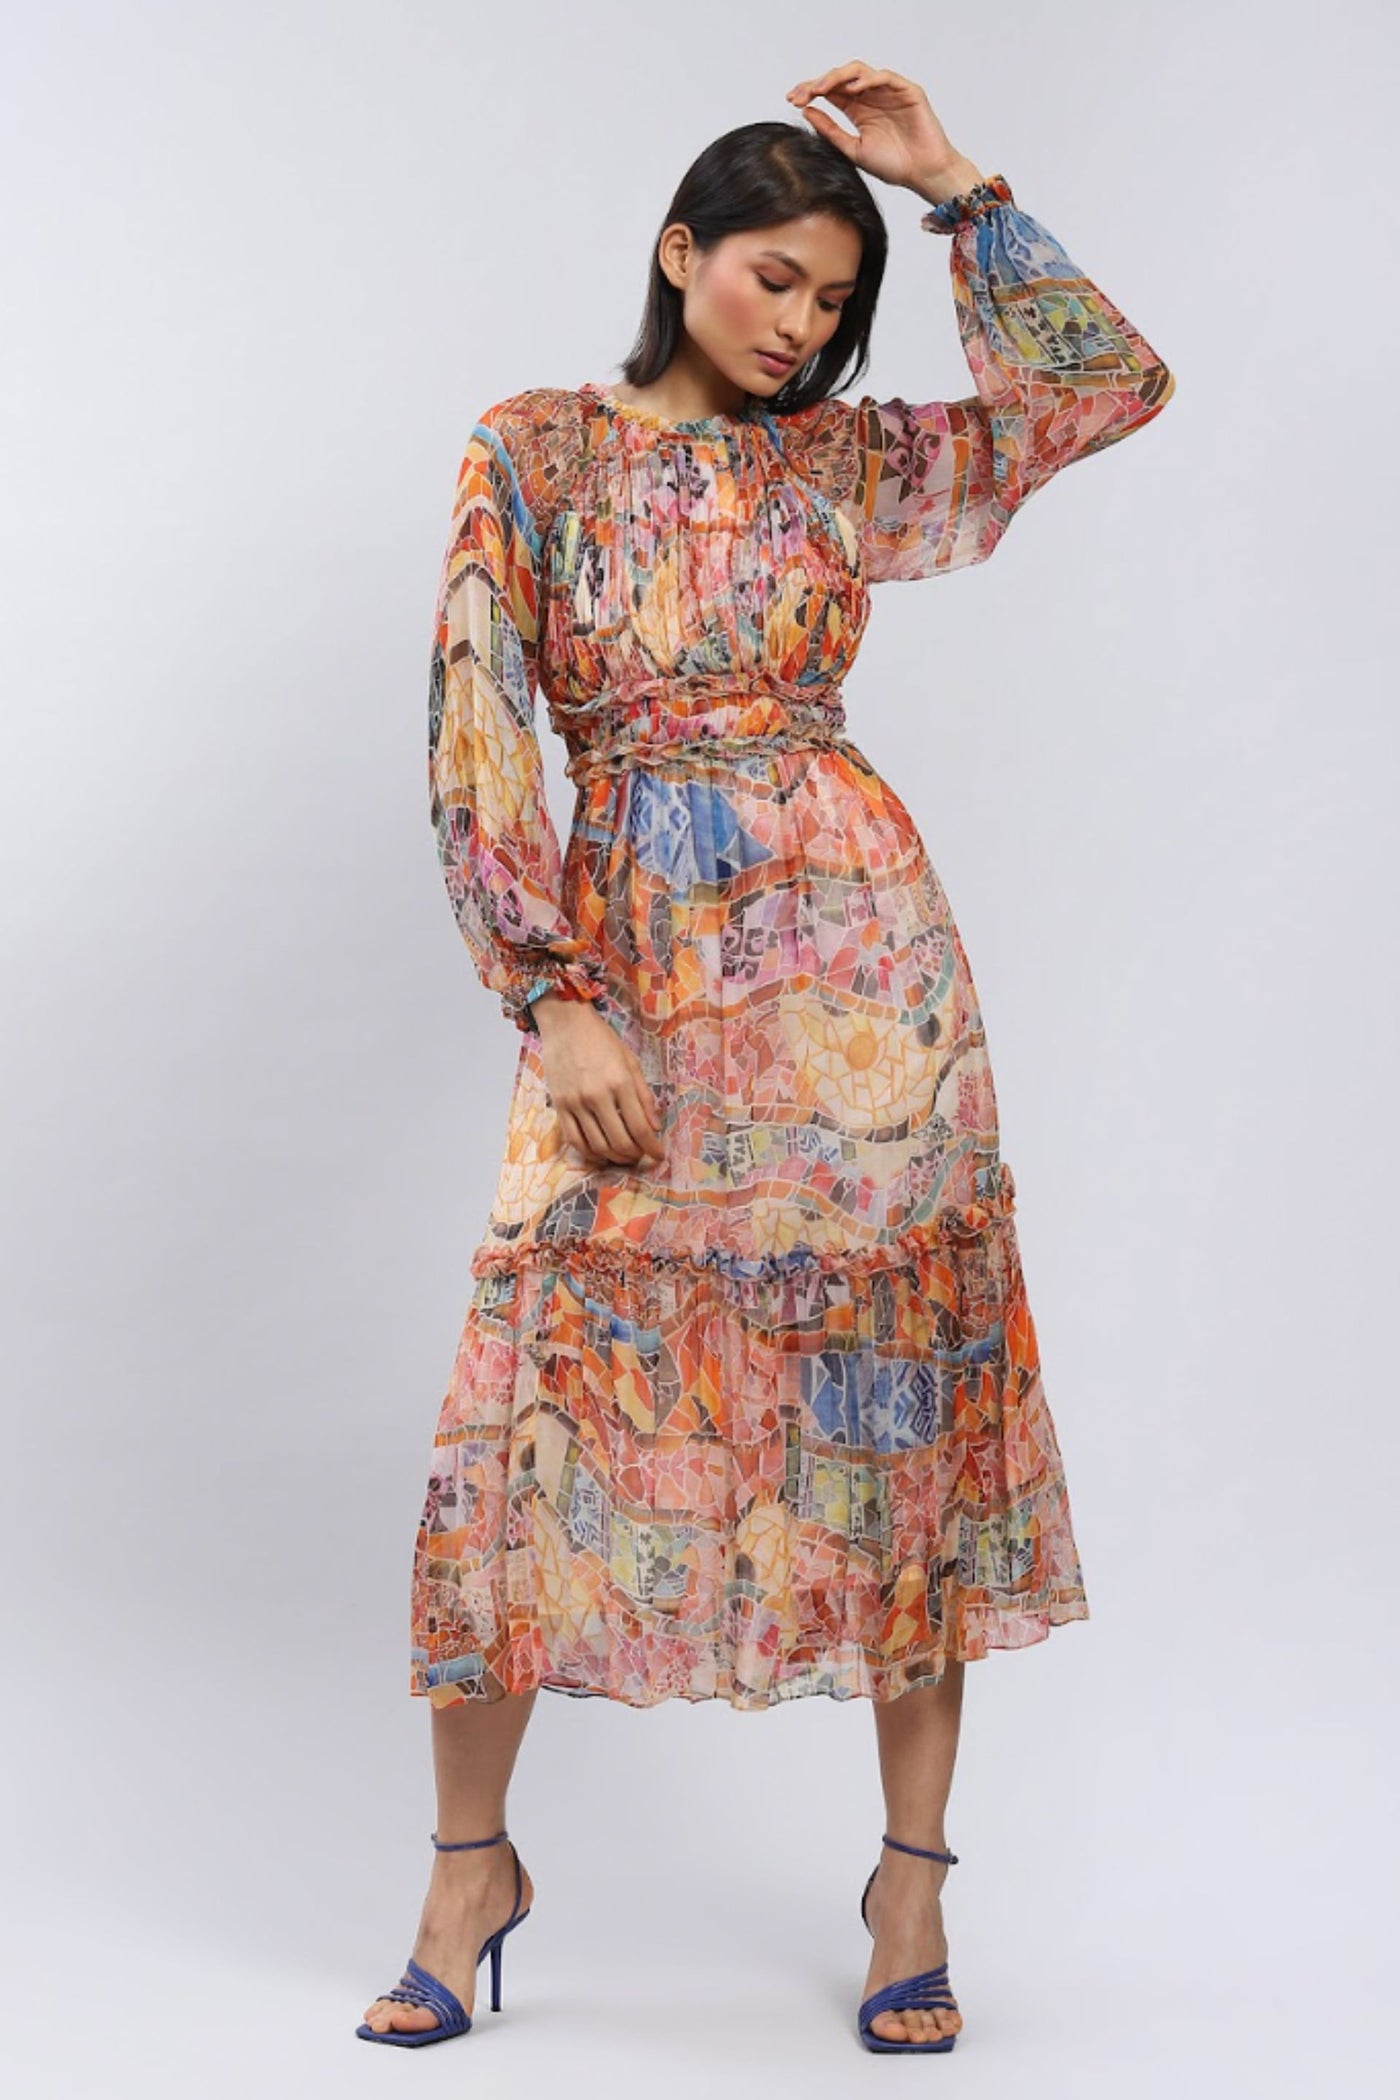 Label Ritu Kumar Round Neck Full Sleeves Long Dress designer wear online shopping melange singapore